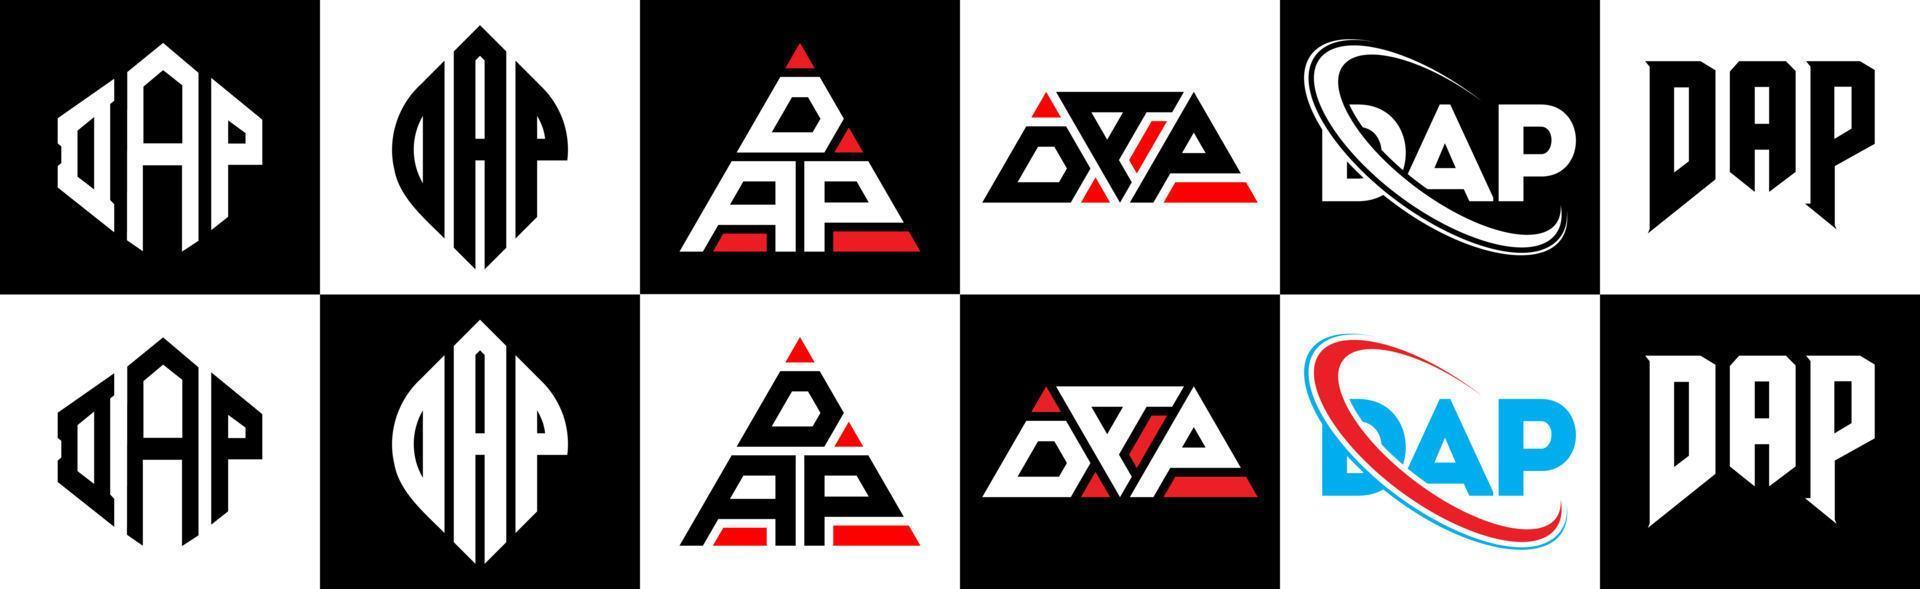 DAP-Buchstaben-Logo-Design in sechs Stilen. Dap-Polygon, Kreis, Dreieck, Sechseck, flacher und einfacher Stil mit schwarz-weißem Buchstabenlogo in einer Zeichenfläche. Dap minimalistisches und klassisches Logo vektor